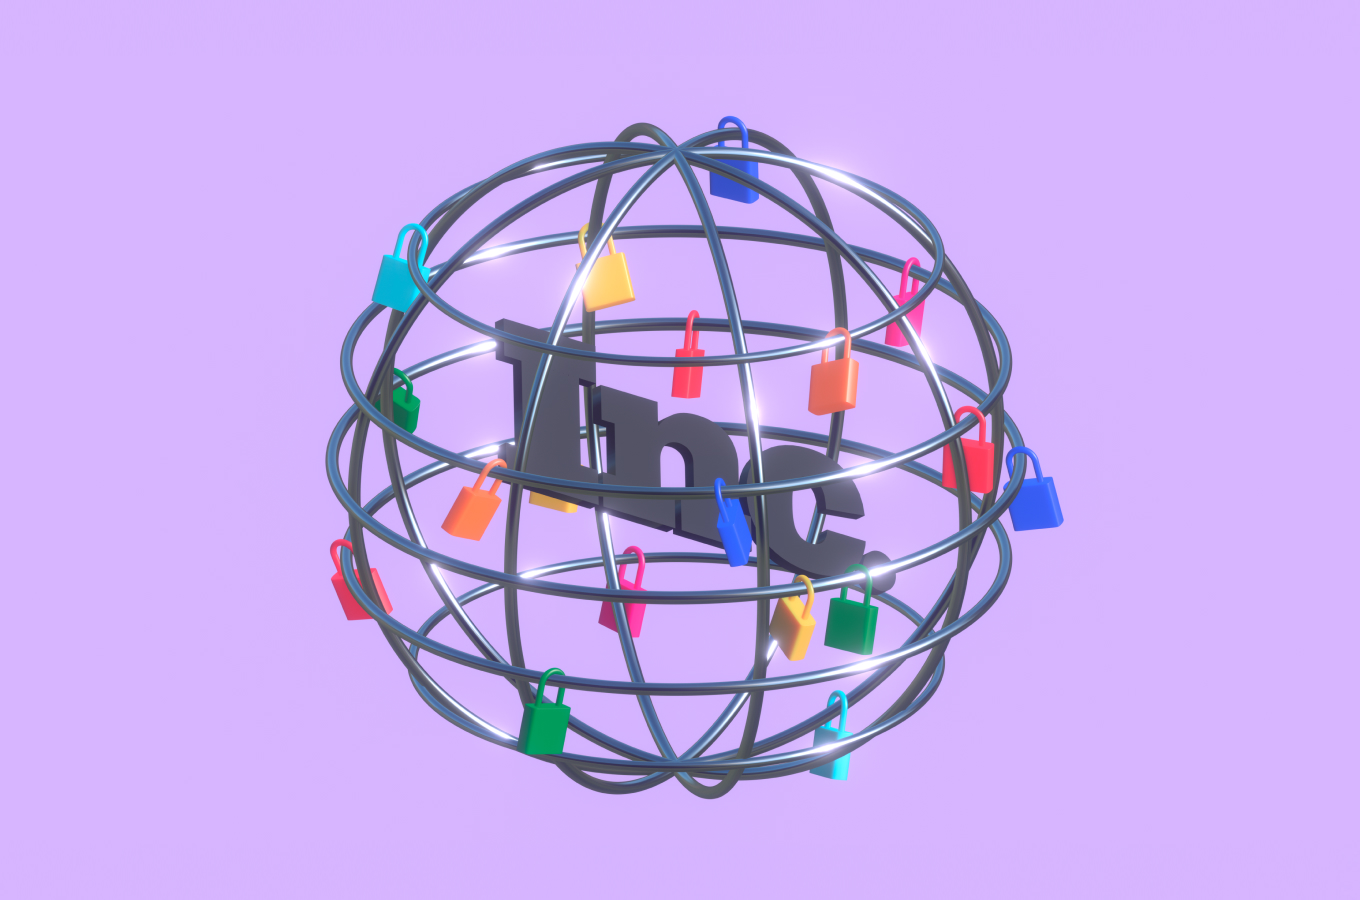 Изображение глобуса с множеством прицепленных к нему разноцветных замков